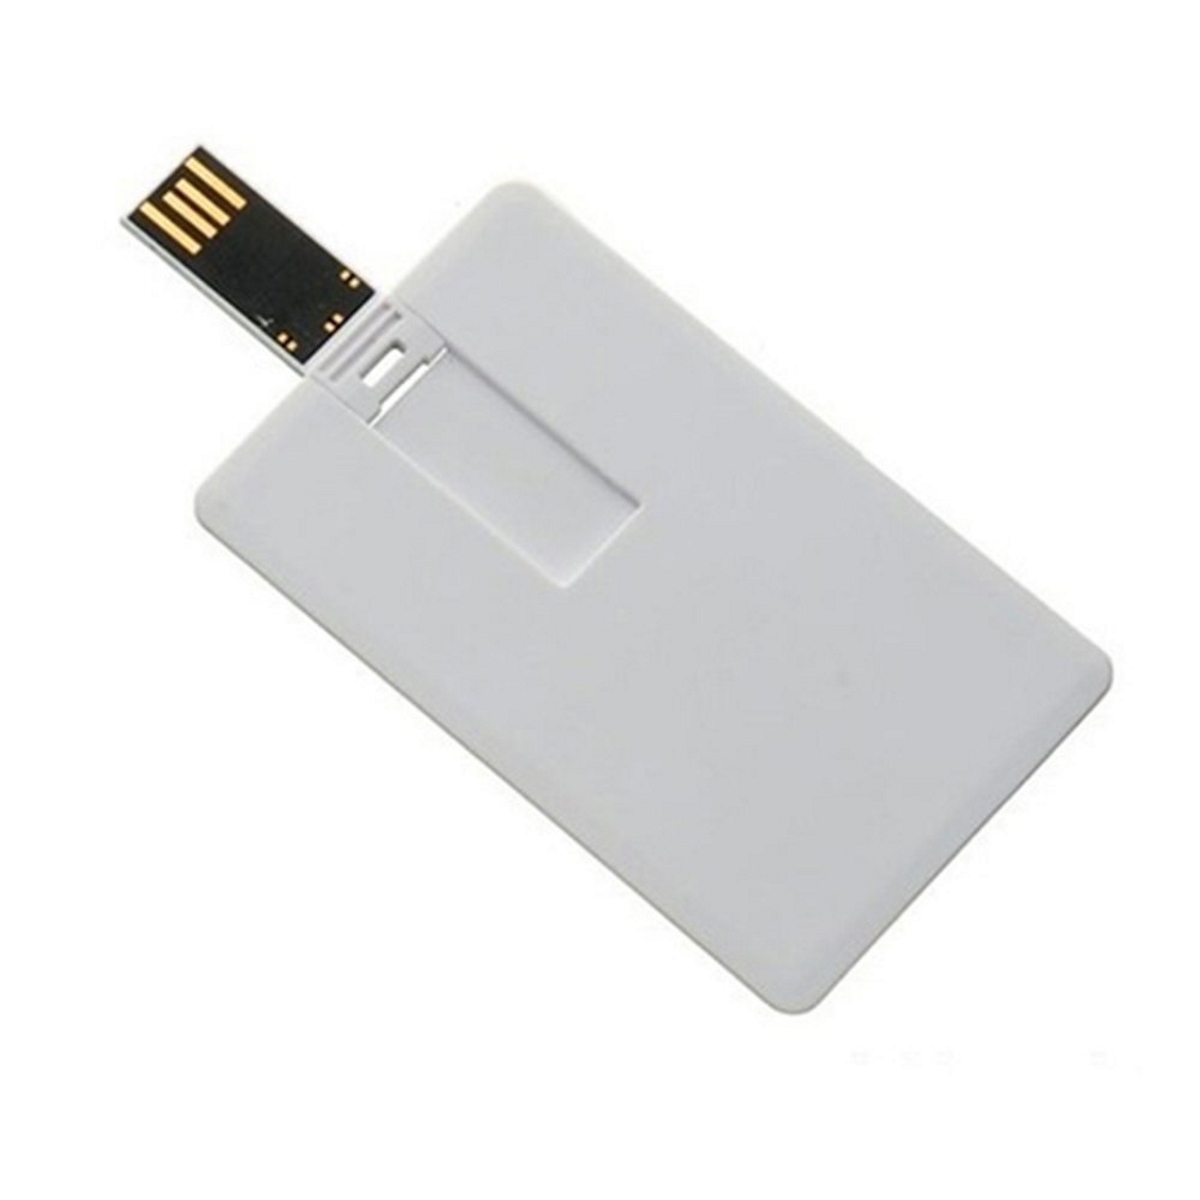 USB GERMANY ® Kreditkarte USB-Stick (Weiss, GB) 4